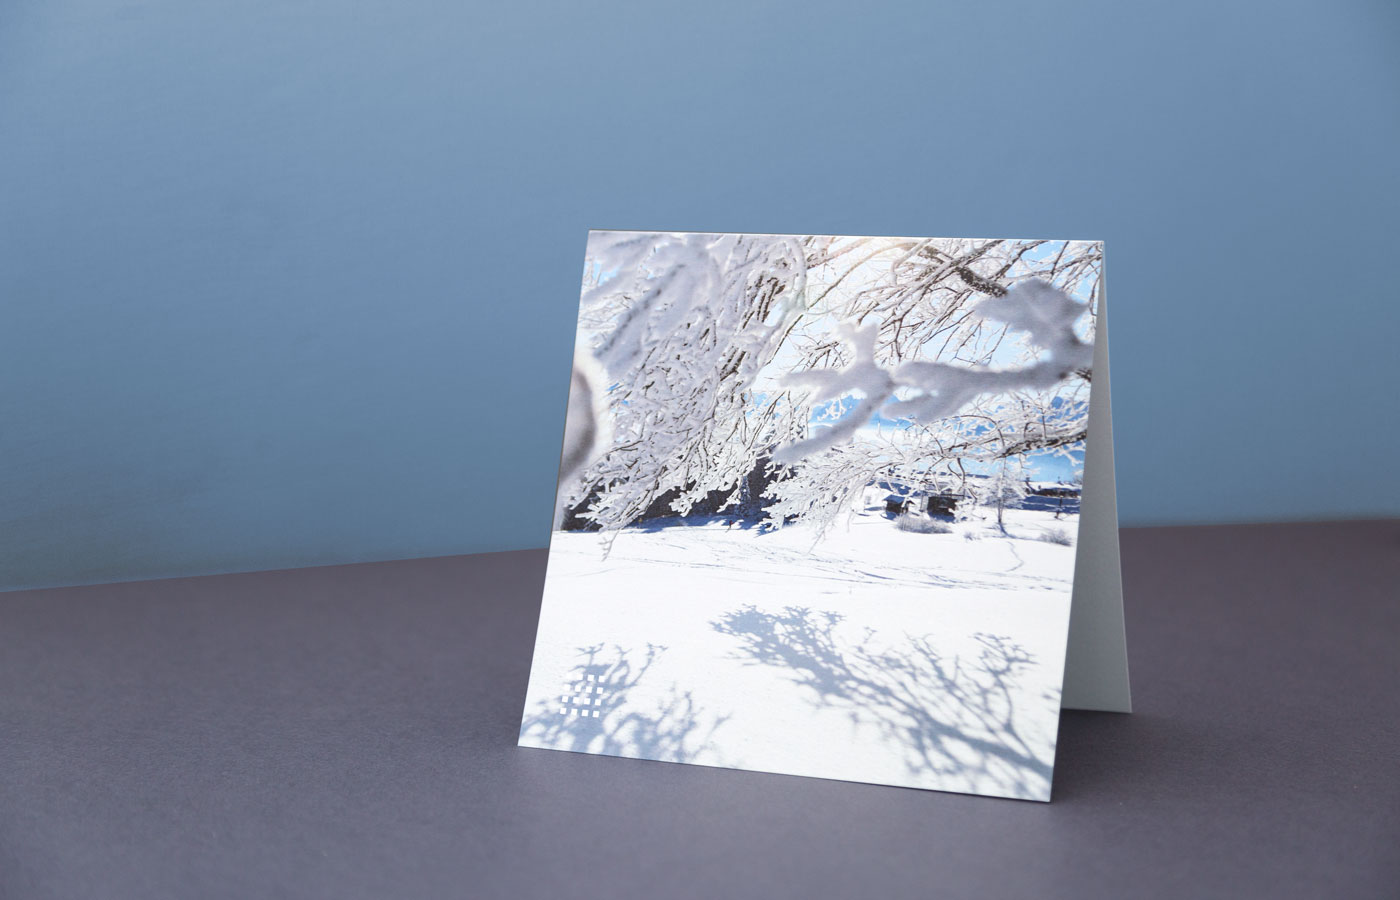 Weihnachtskarte für Fairway Finanzberatung mit Schneebild, fotografiert von Marina Hobi